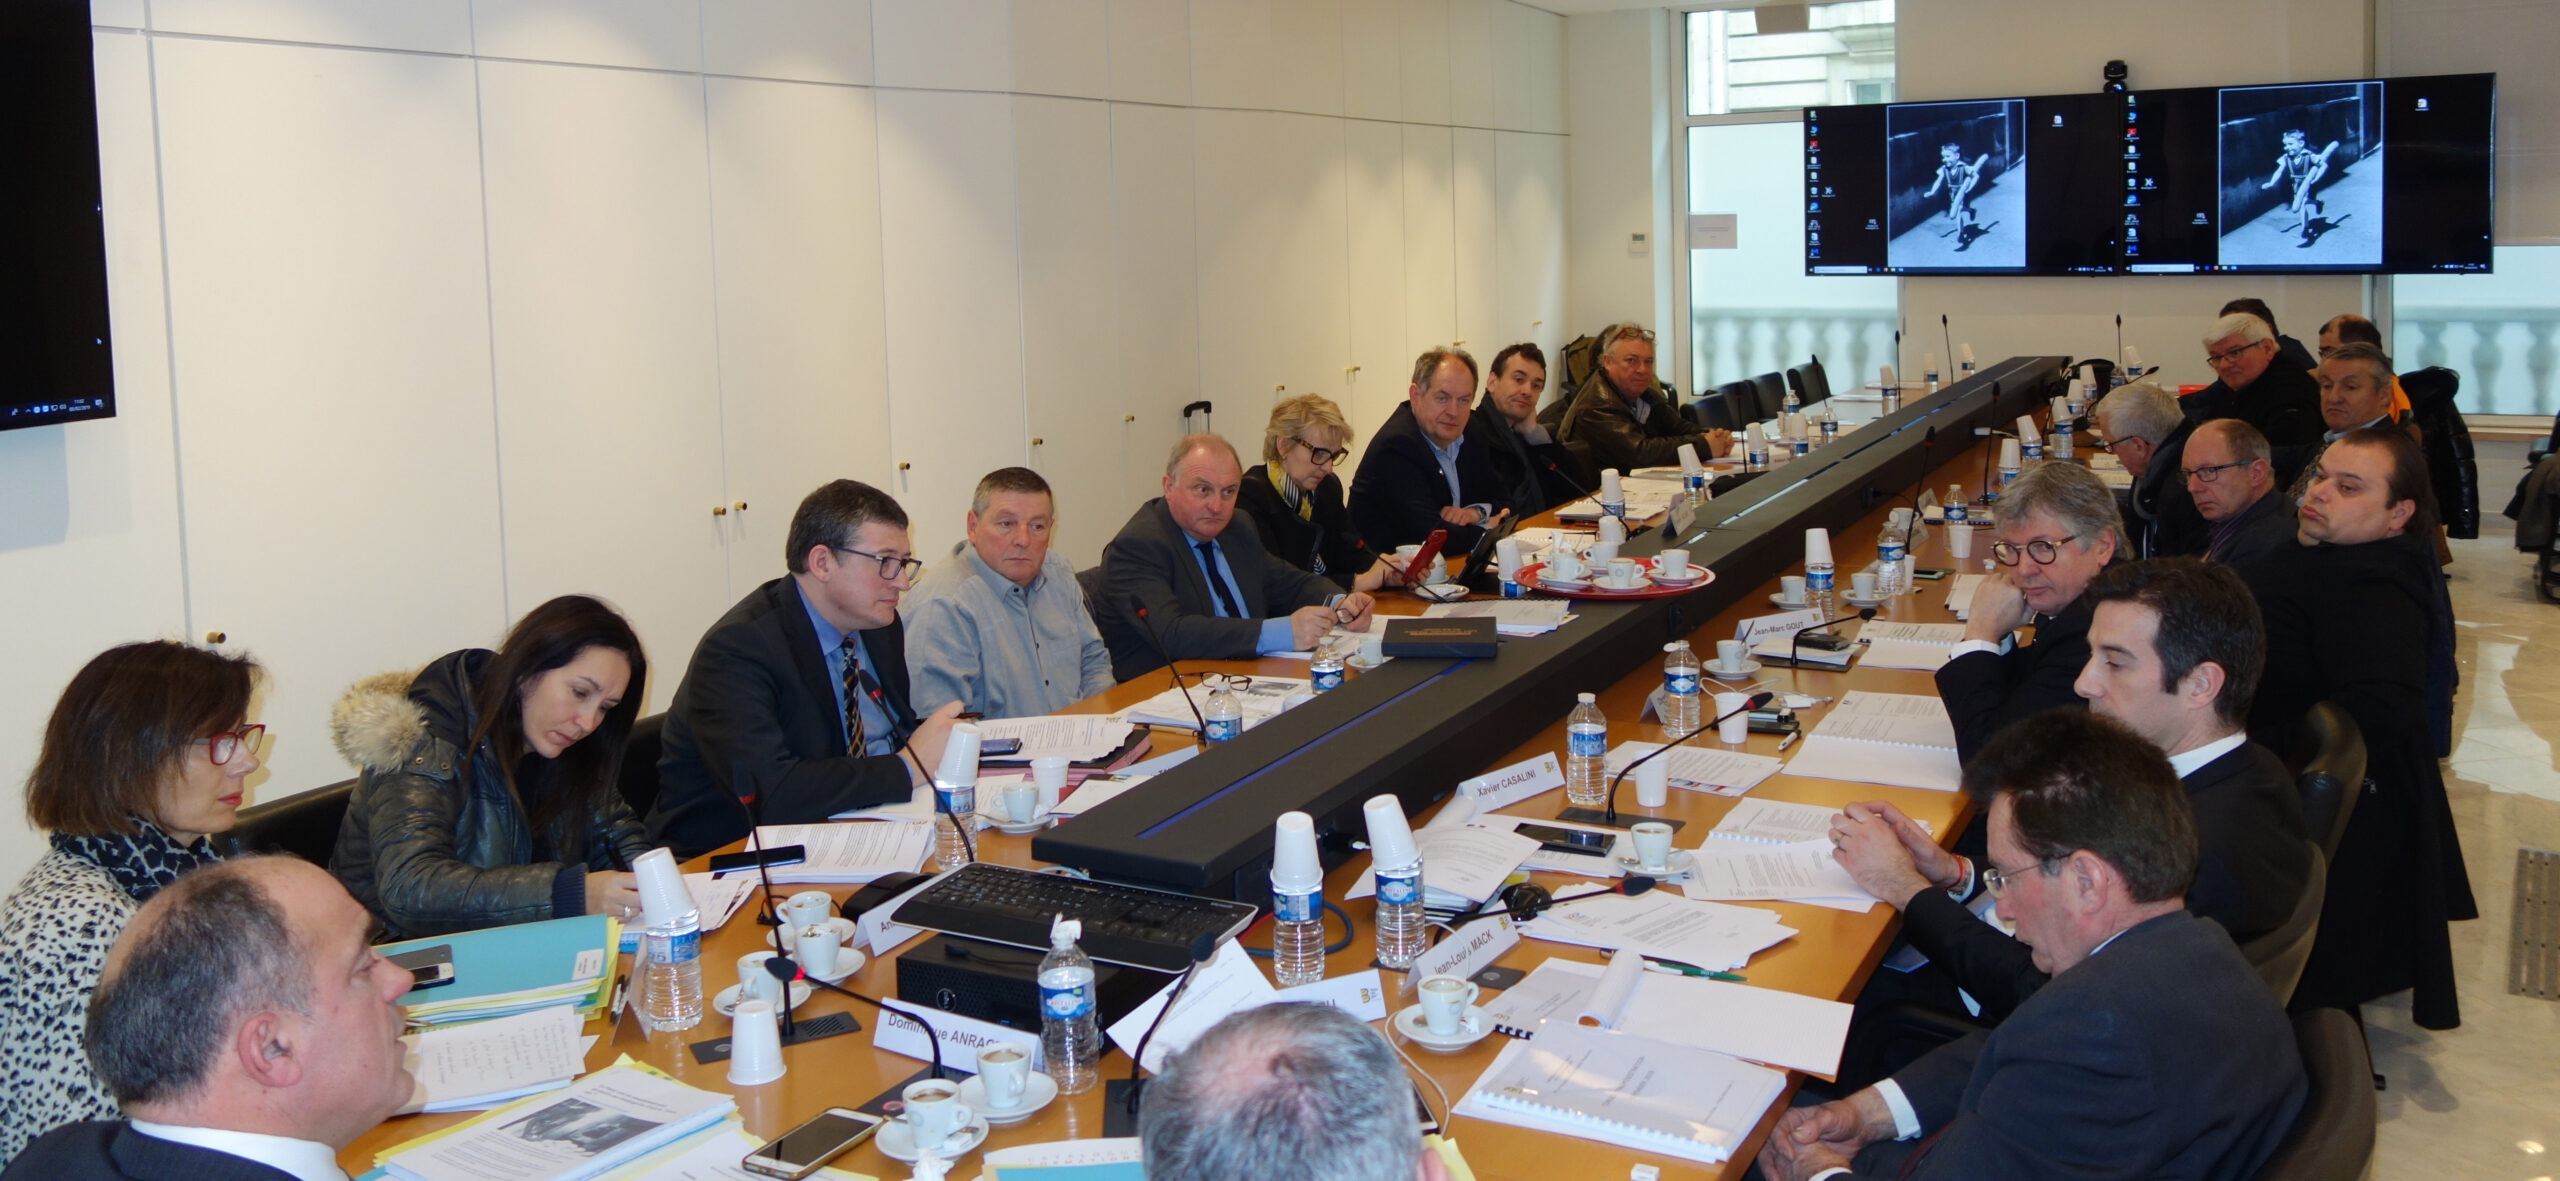 Bureau et Conseil d’administration : réunion en février à Paris